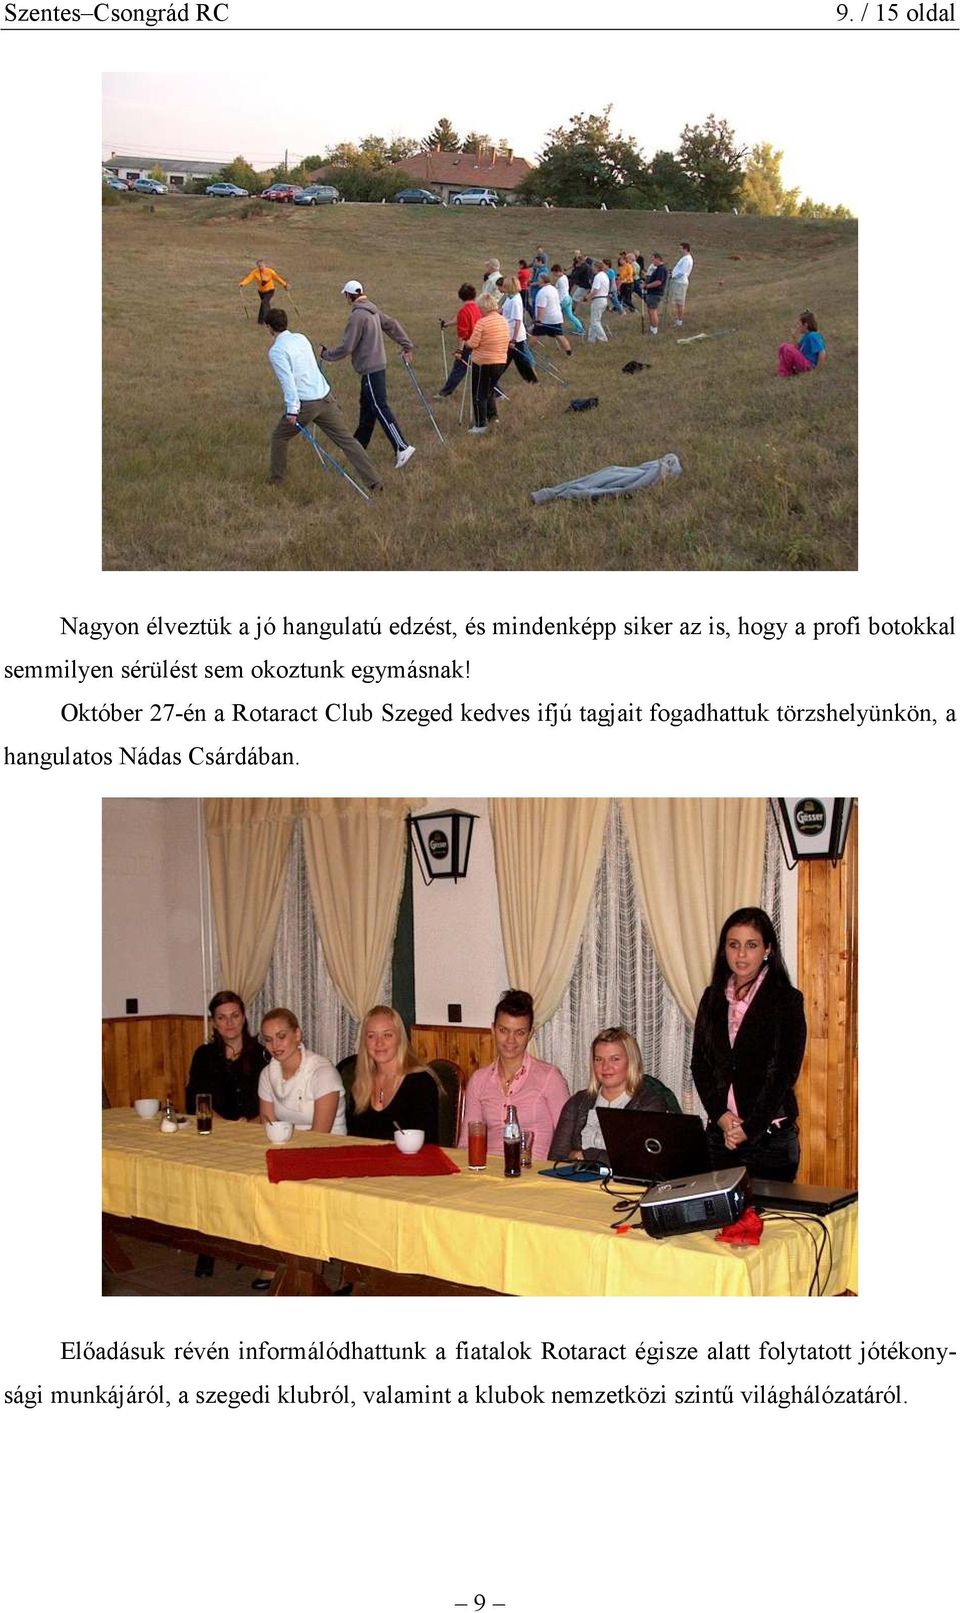 Október 27-én a Rotaract Club Szeged kedves ifjú tagjait fogadhattuk törzshelyünkön, a hangulatos Nádas